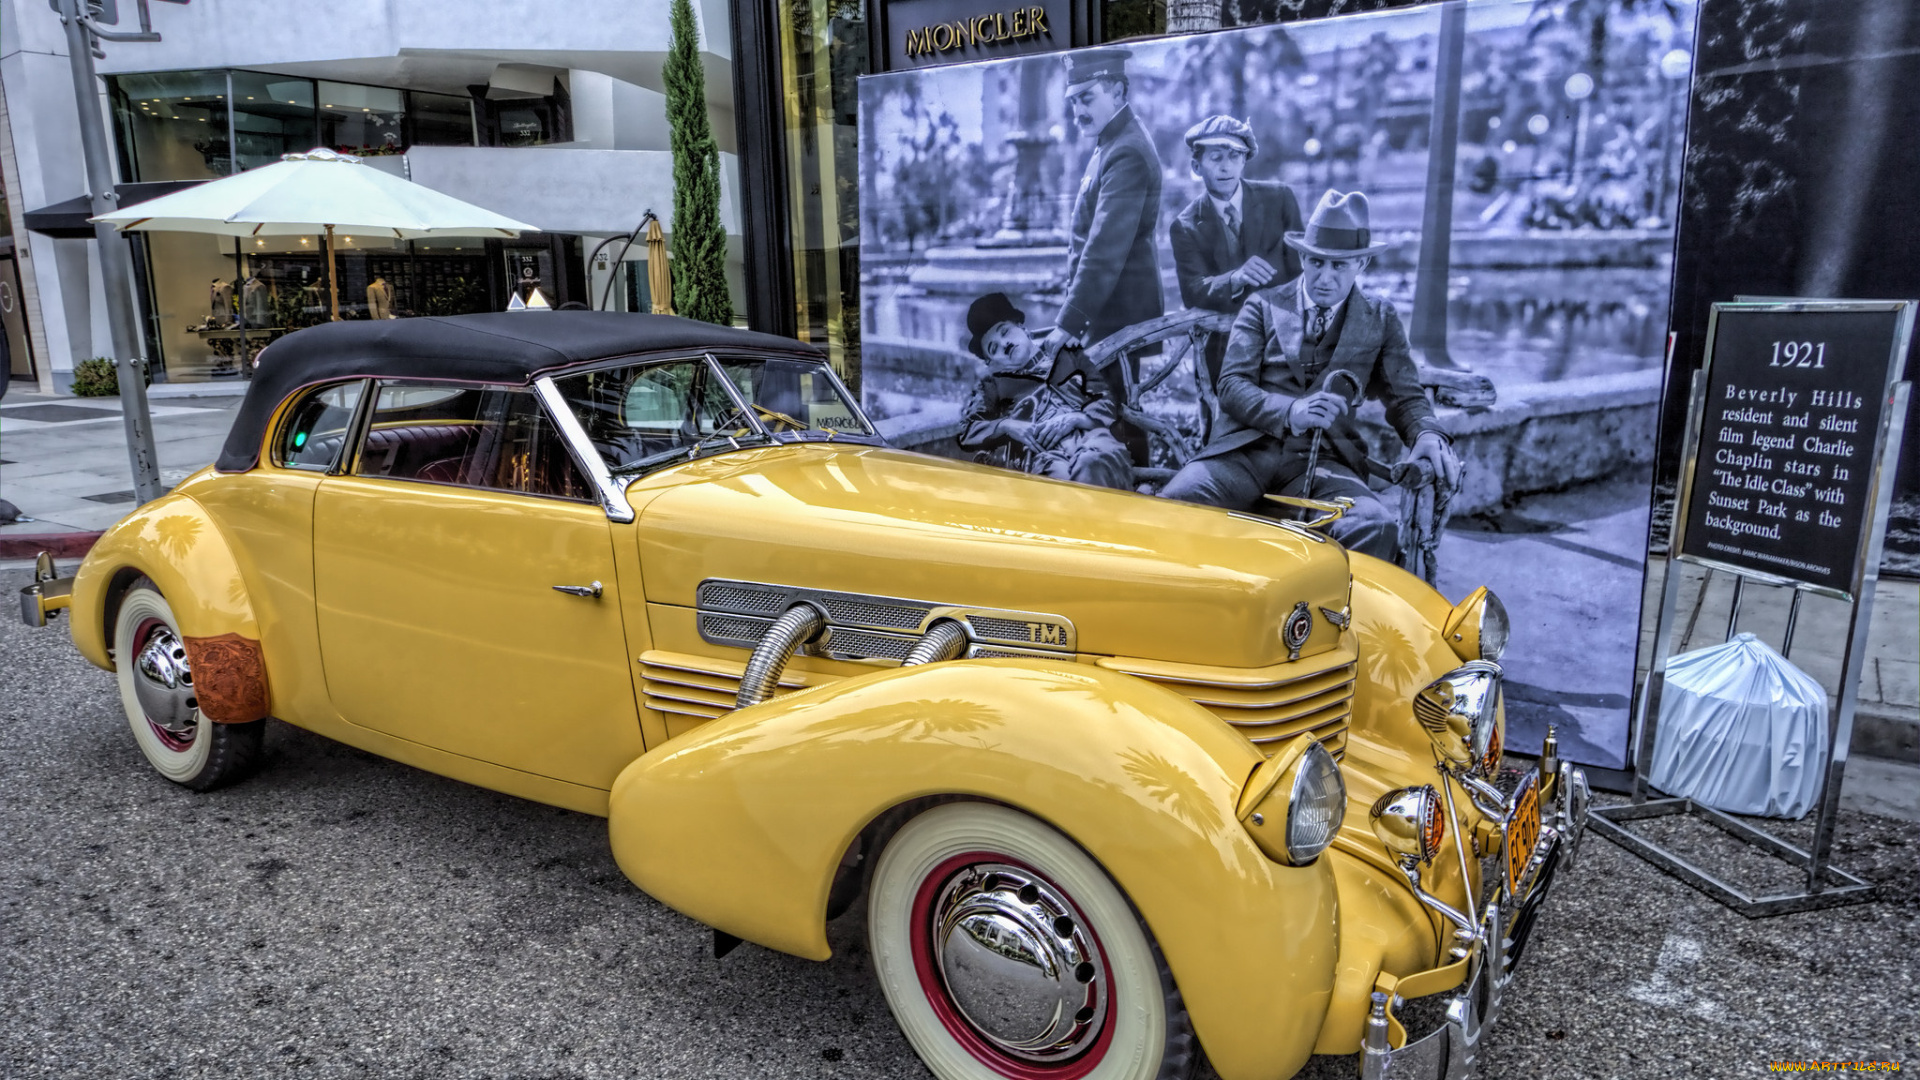 1937, cord, 812, sc, phaeton, автомобили, выставки, и, уличные, фото, автошоу, выставка